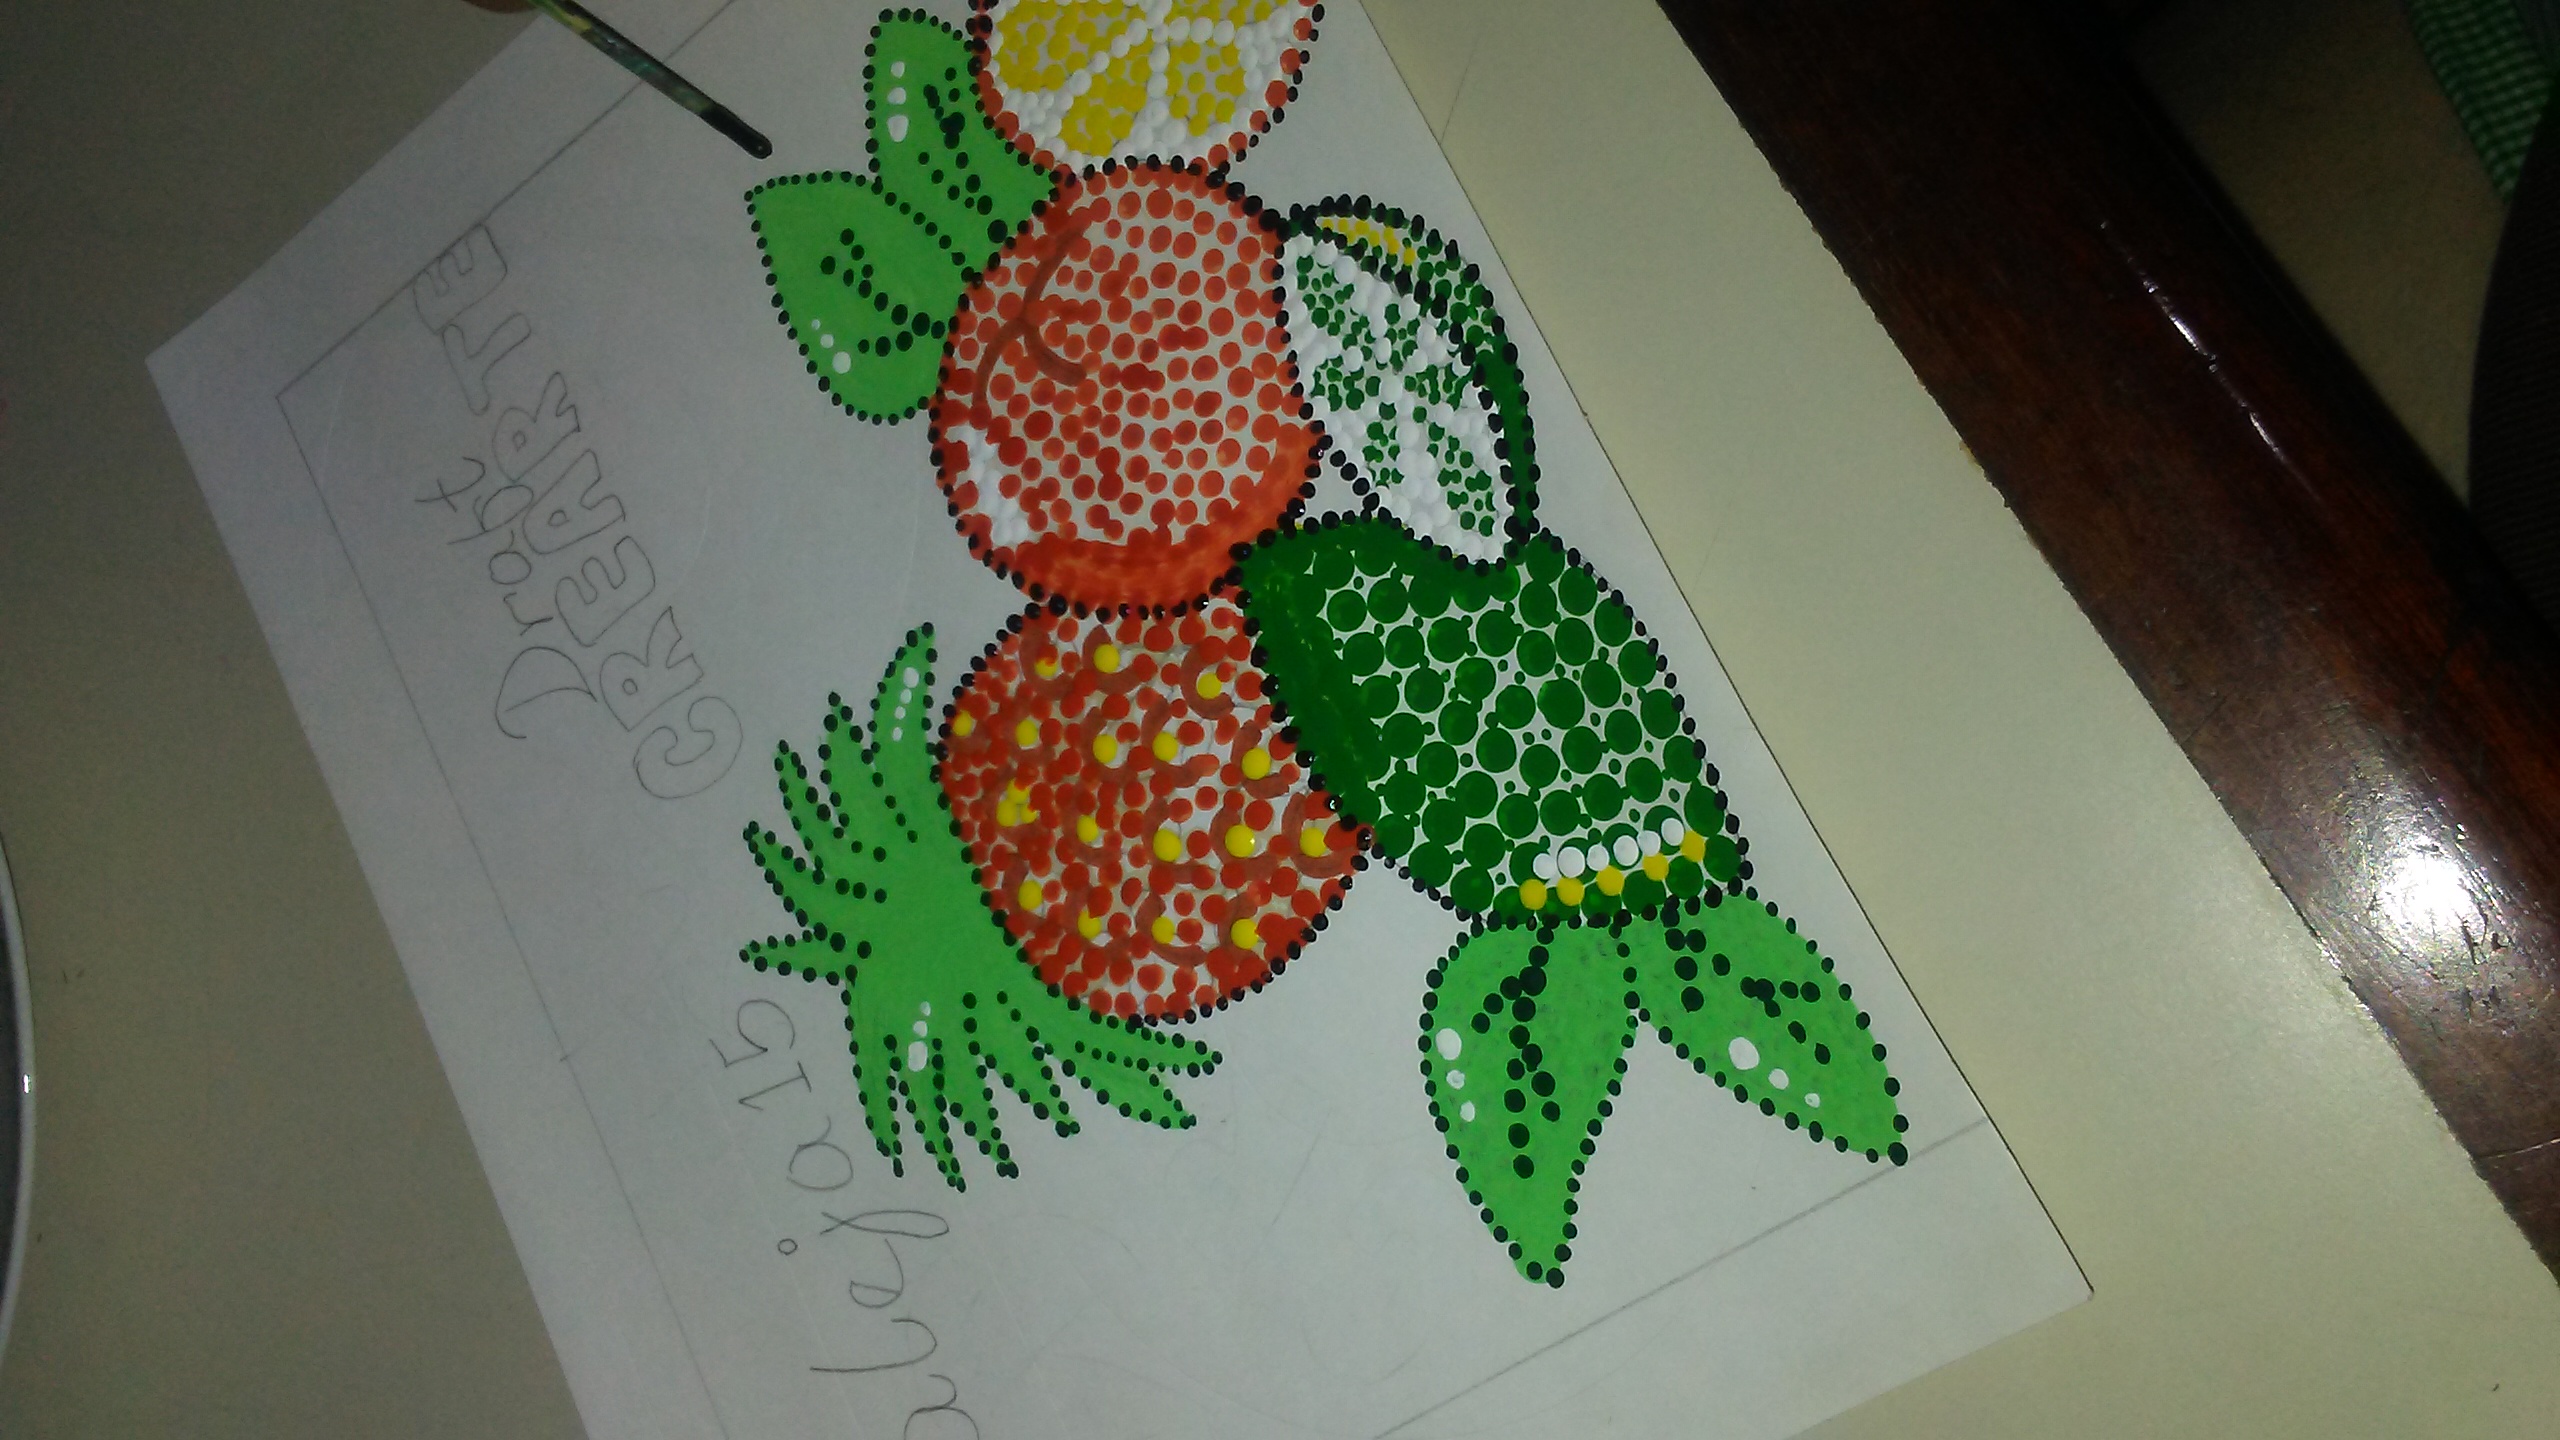 Concurso #7/realiza una obra de arte utilizando la tecnica del puntillismo/frutas  saludables por @aleja15/21-05-21.